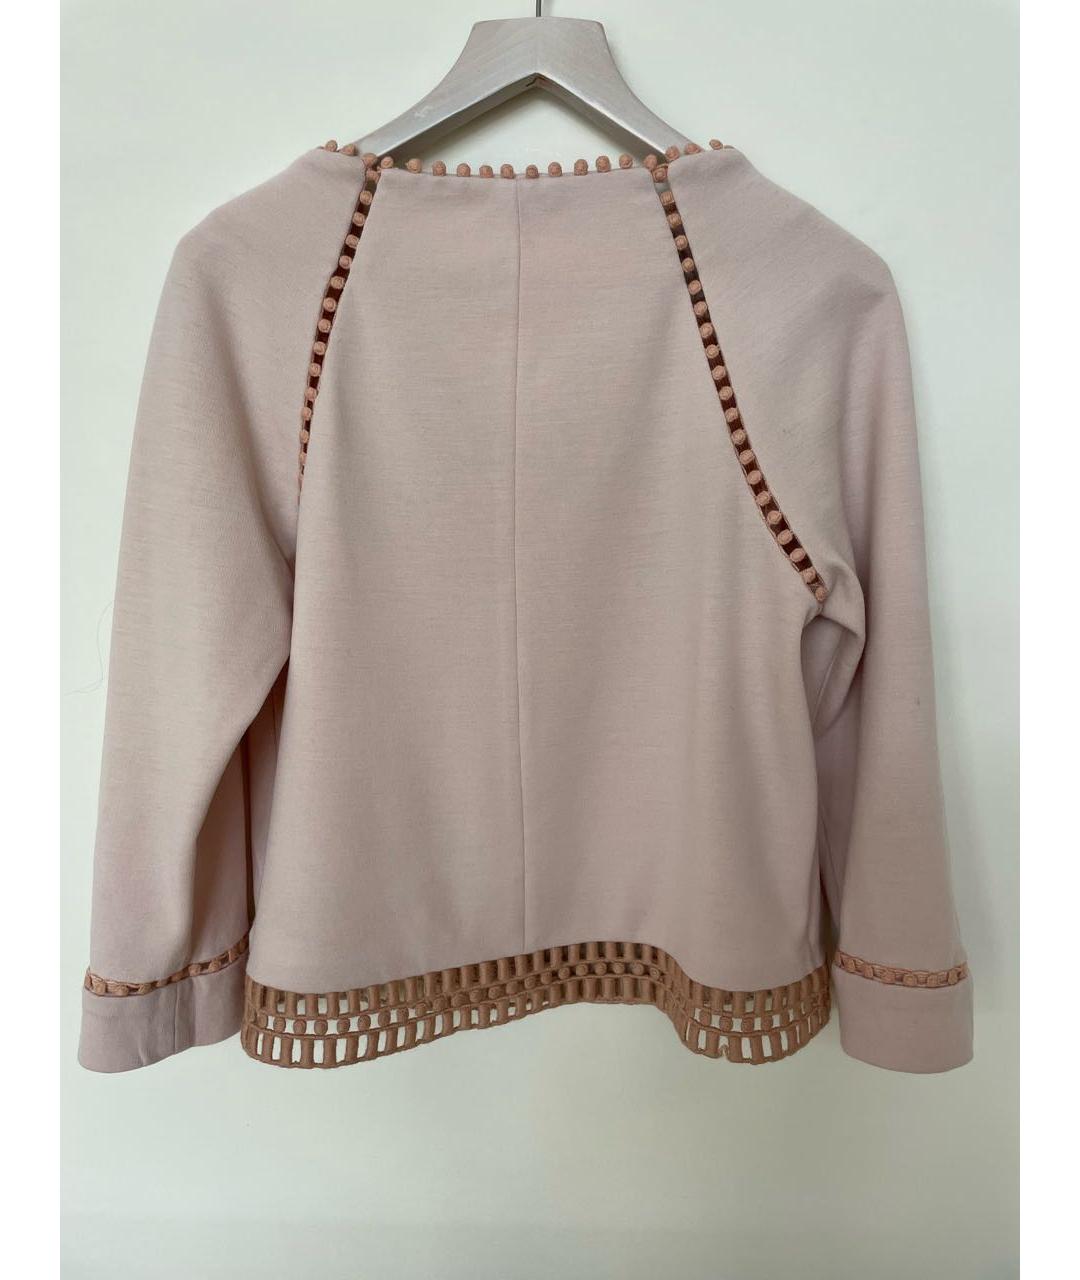 CHLOE Розовый шерстяной джемпер / свитер, фото 2